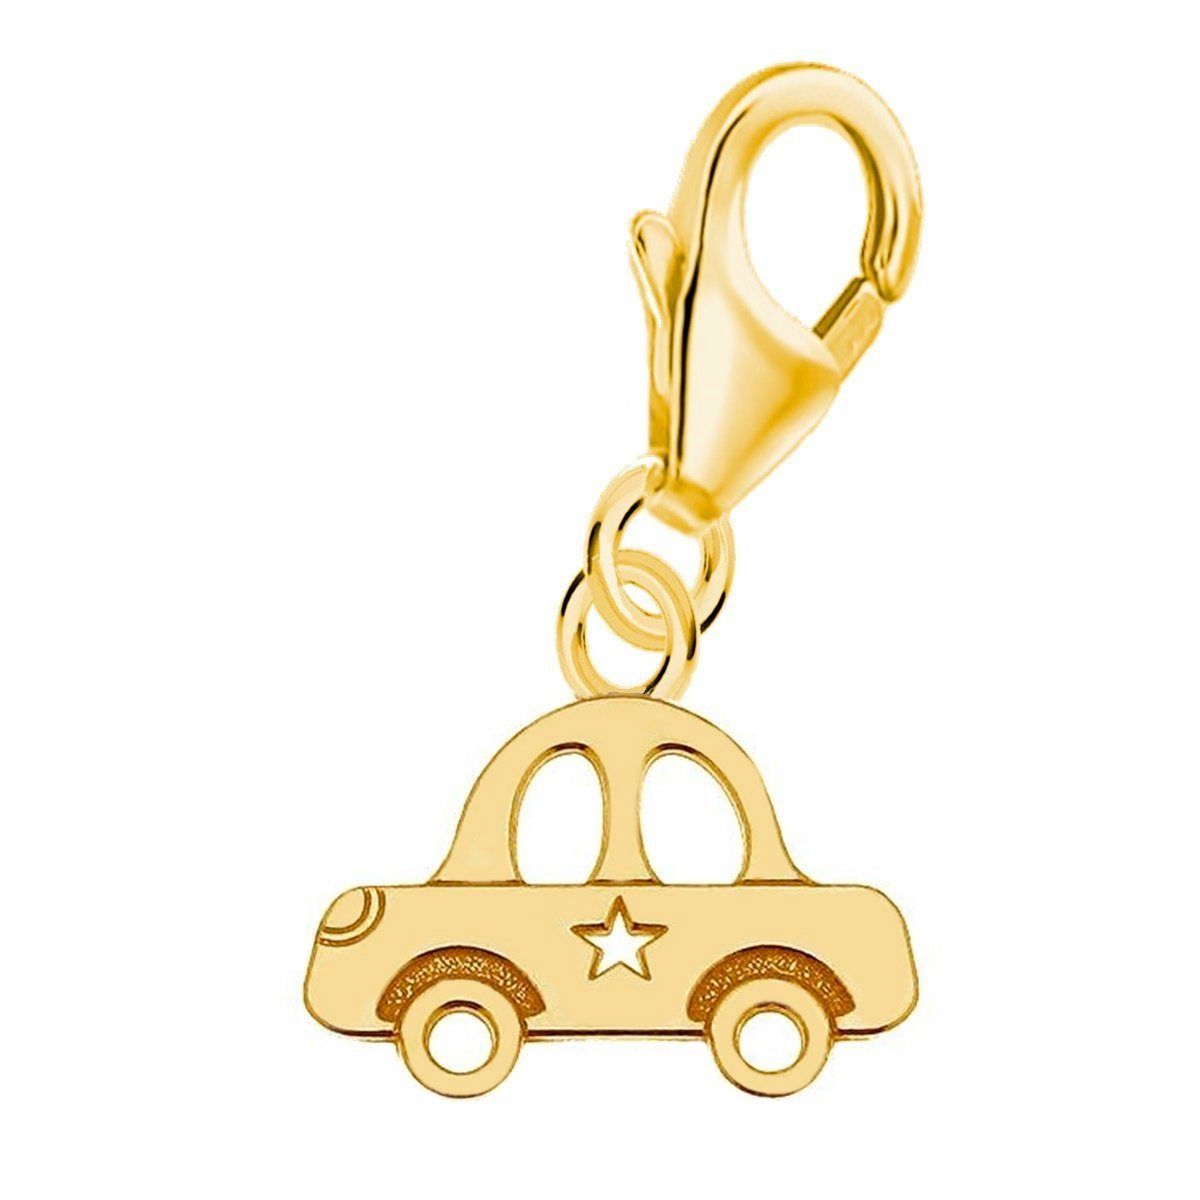 Goldene Hufeisen Charm-Einhänger Auto Charm Anhänger für Bettelarmband aus 925 Silber Vergoldet (inkl. Etui), für Gliederarmband oder Halskette